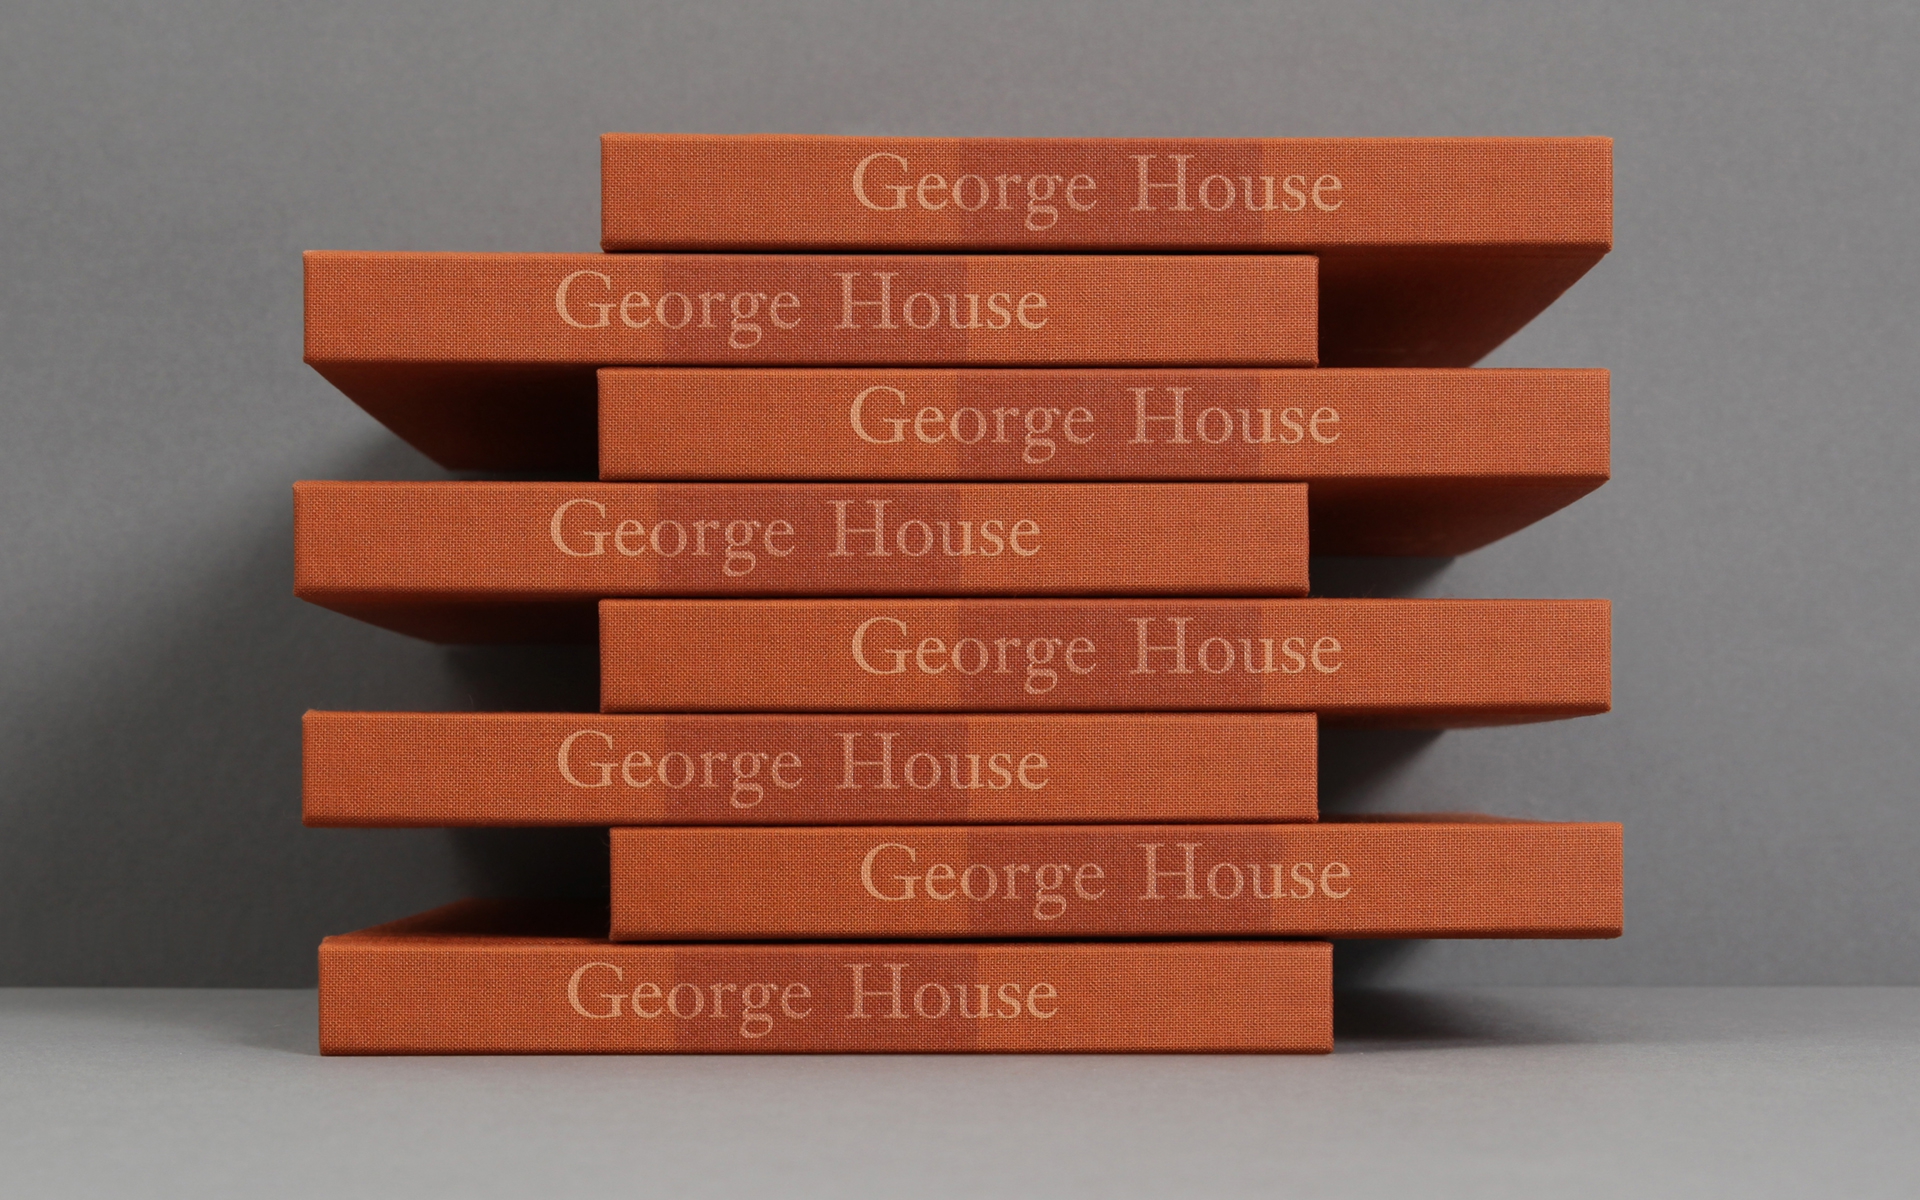 bob-design-george-house-stack3landscape-landscape-65575.jpg